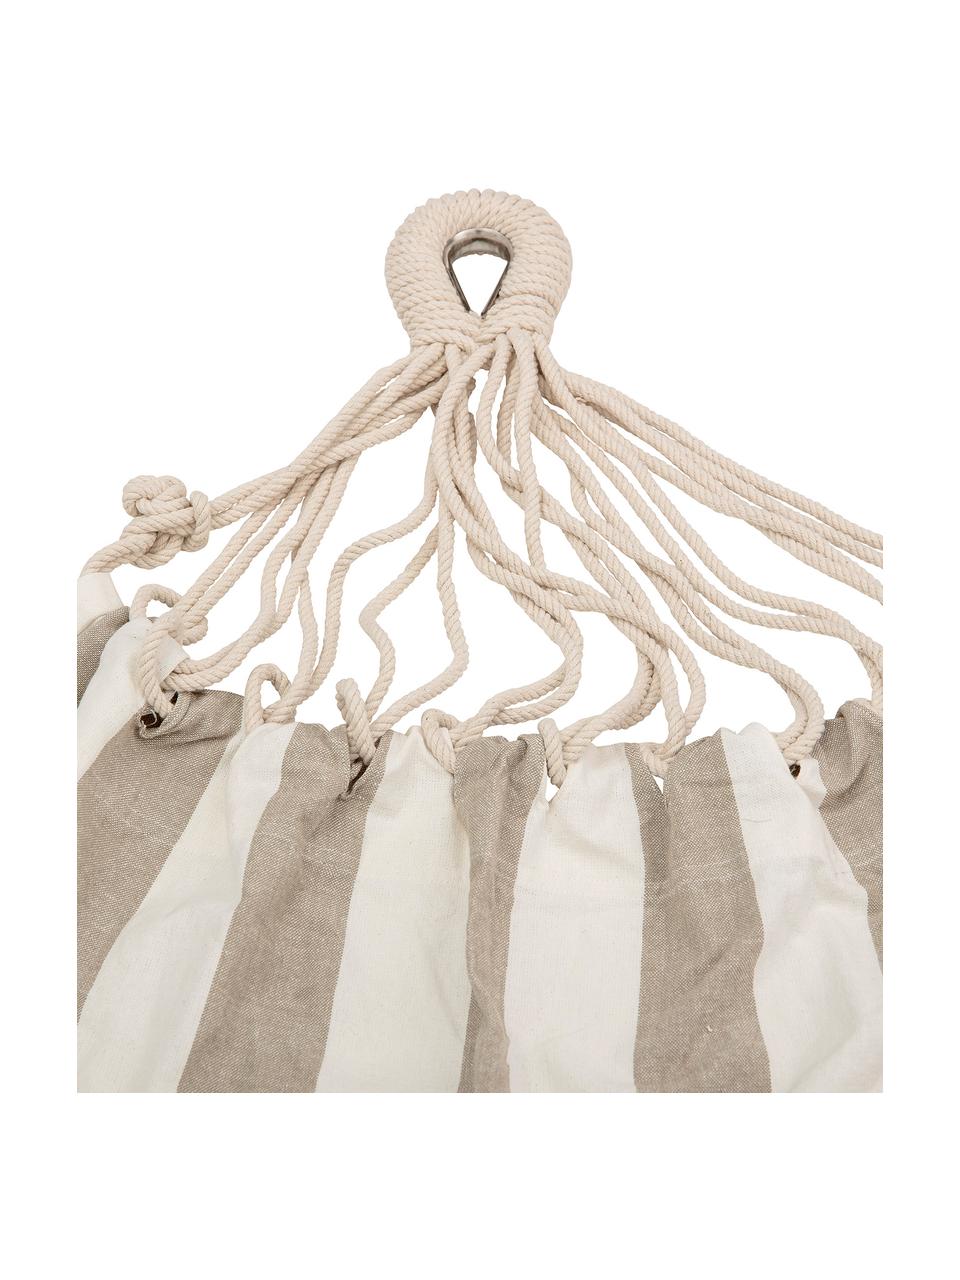 Hängematte Lazy aus Baumwolle mit gestreiftem Muster, Baumwolle, Weiß, Beige, B 100 x L 270 cm